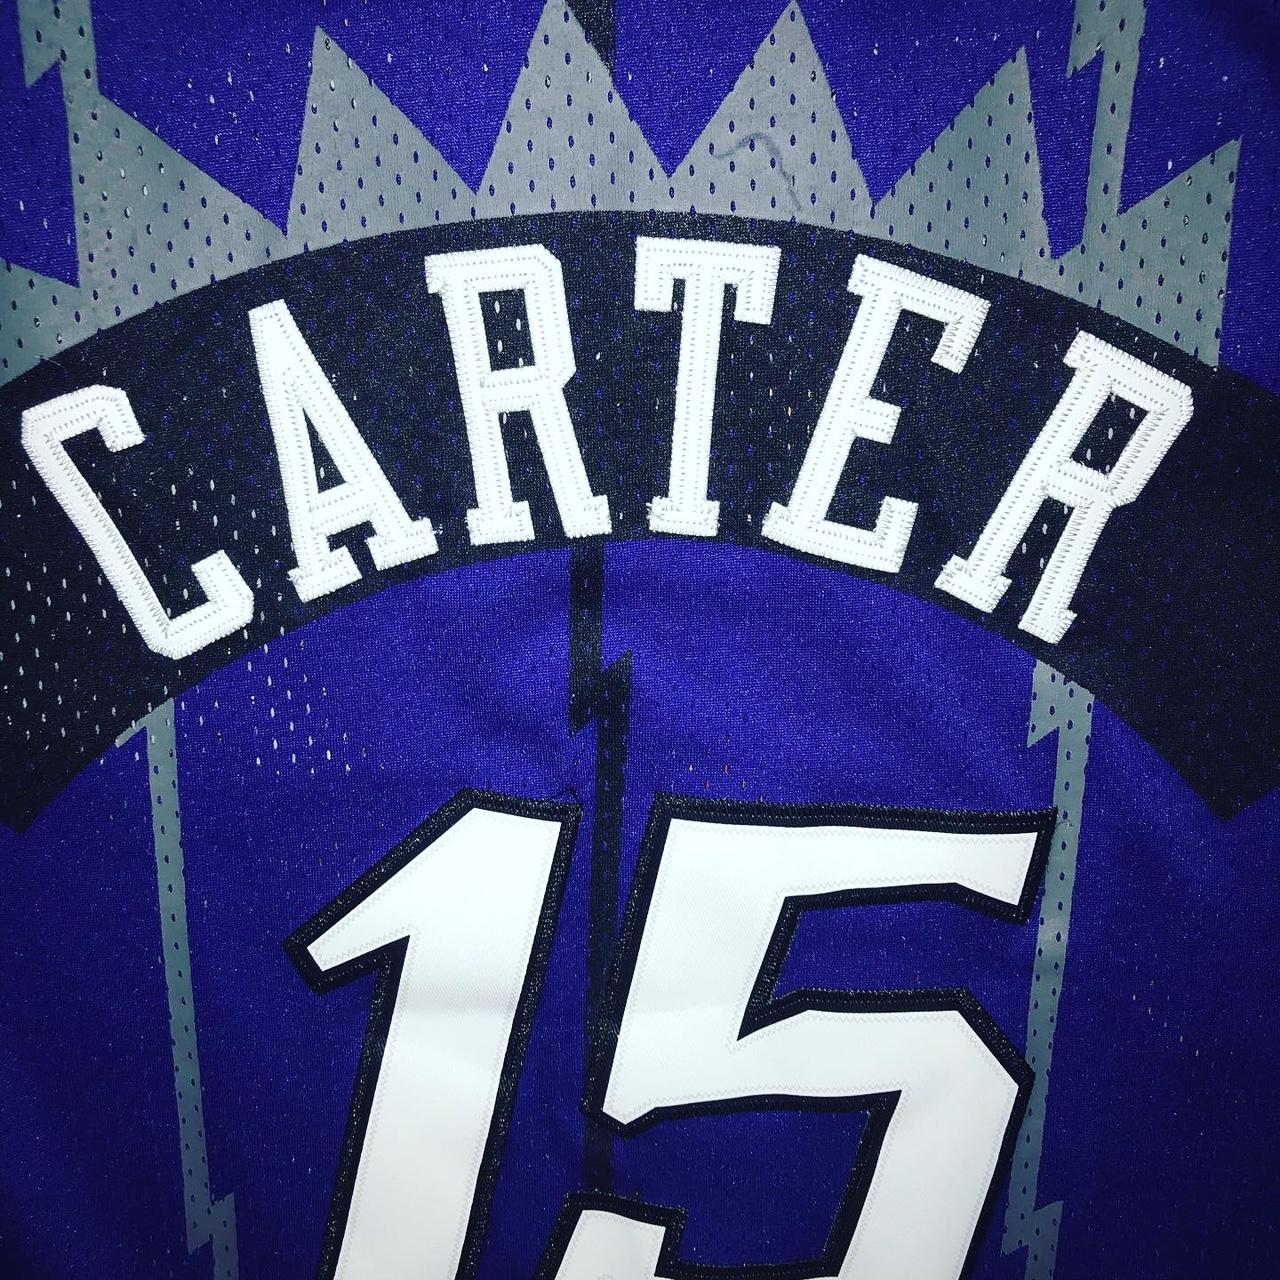 Adidas New Jersey Nets Vince Carter Mens Blue - Depop